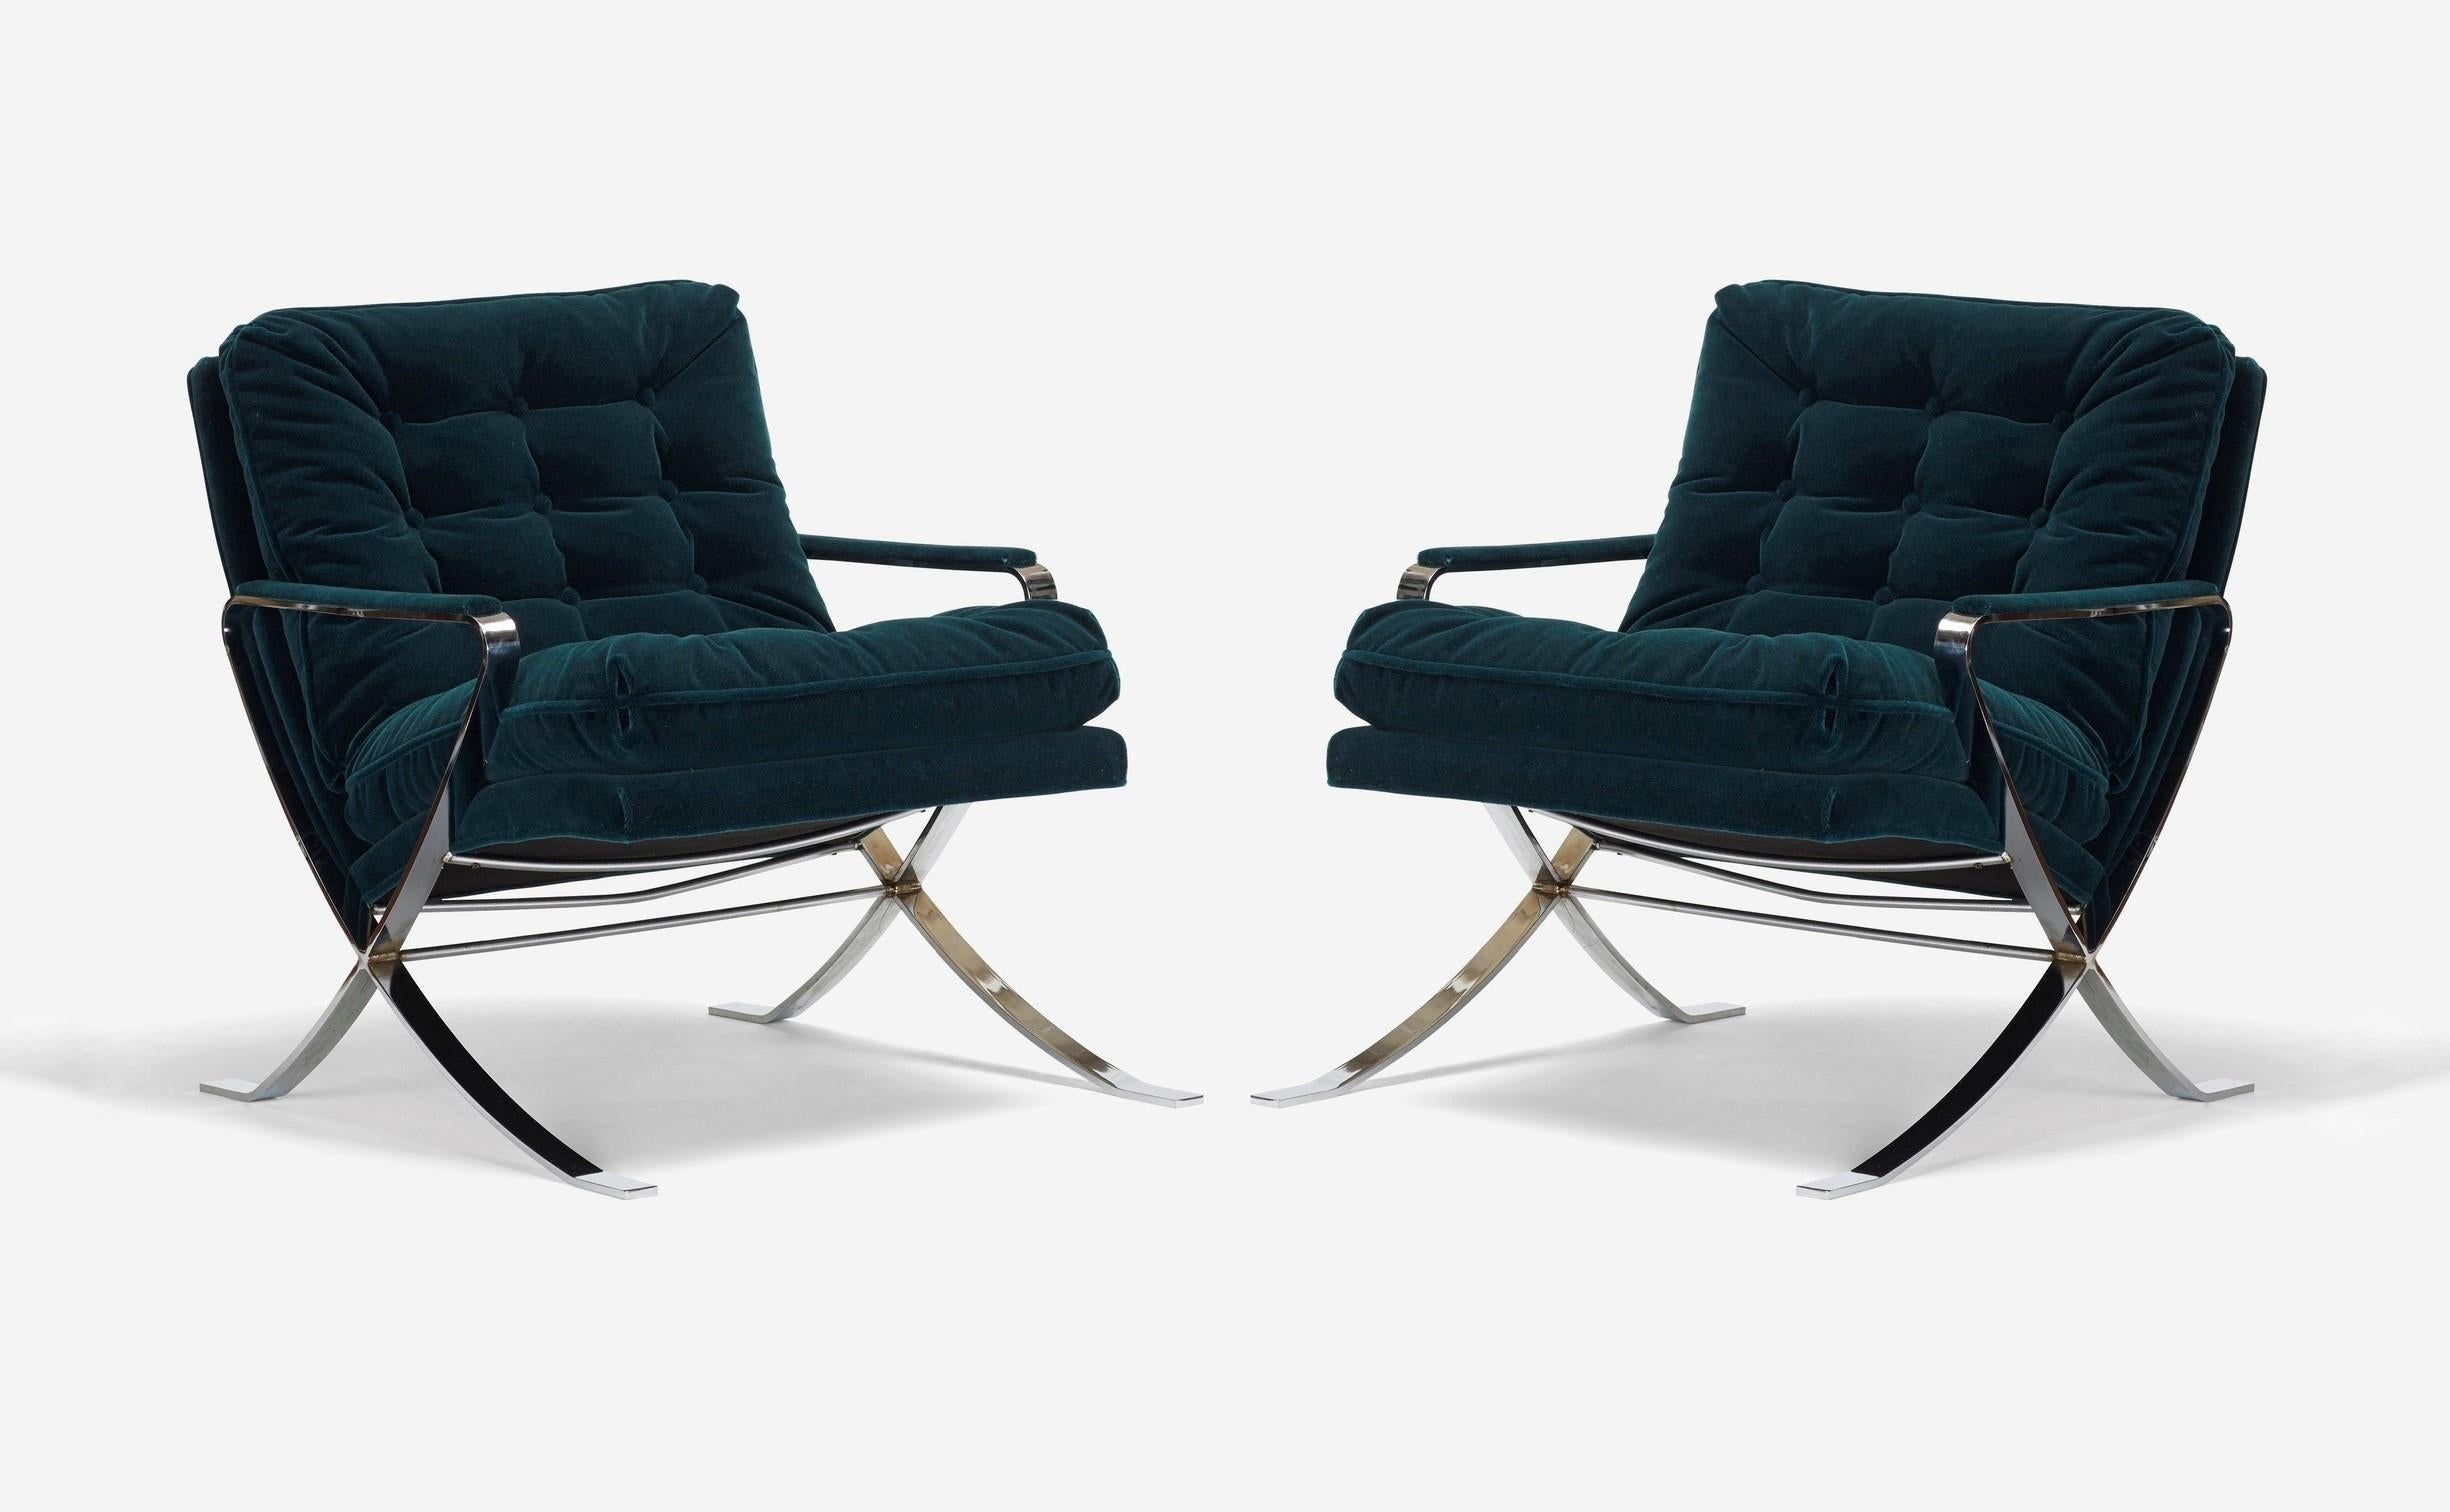 Elegante paire de chaises de salon nouvellement revêtues de velours vert cossu et d'acier plat chromé par Flair Furniture, inspirées des designs de chaises de Milo Baughman et de Mies Van der Rohe (Barcelona Chair). Flair est une entreprise de